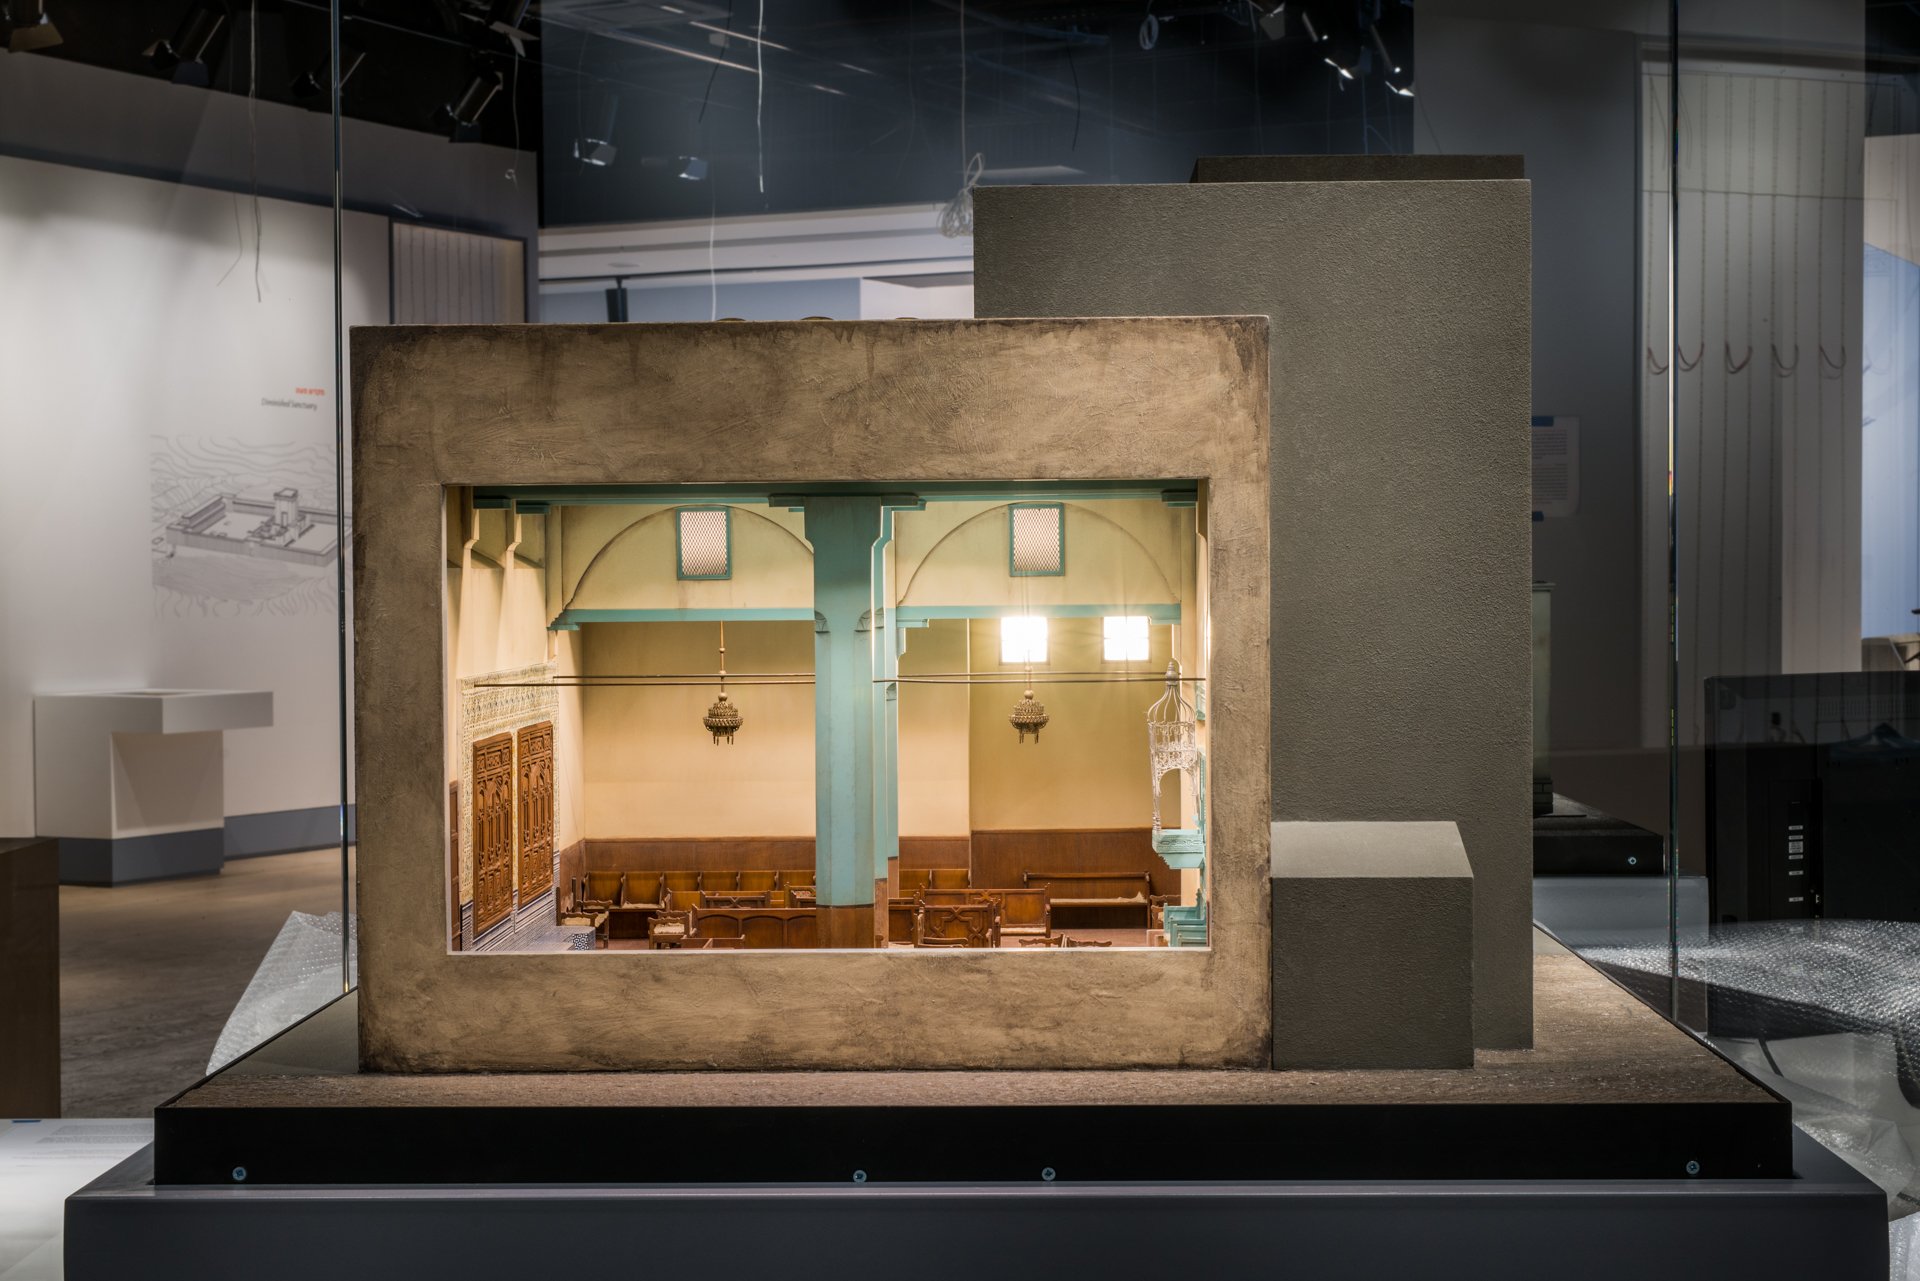 דגם של בית הכנסת בפז. אנו – מוזיאון העם היהודי. היכל בתי הכנסת